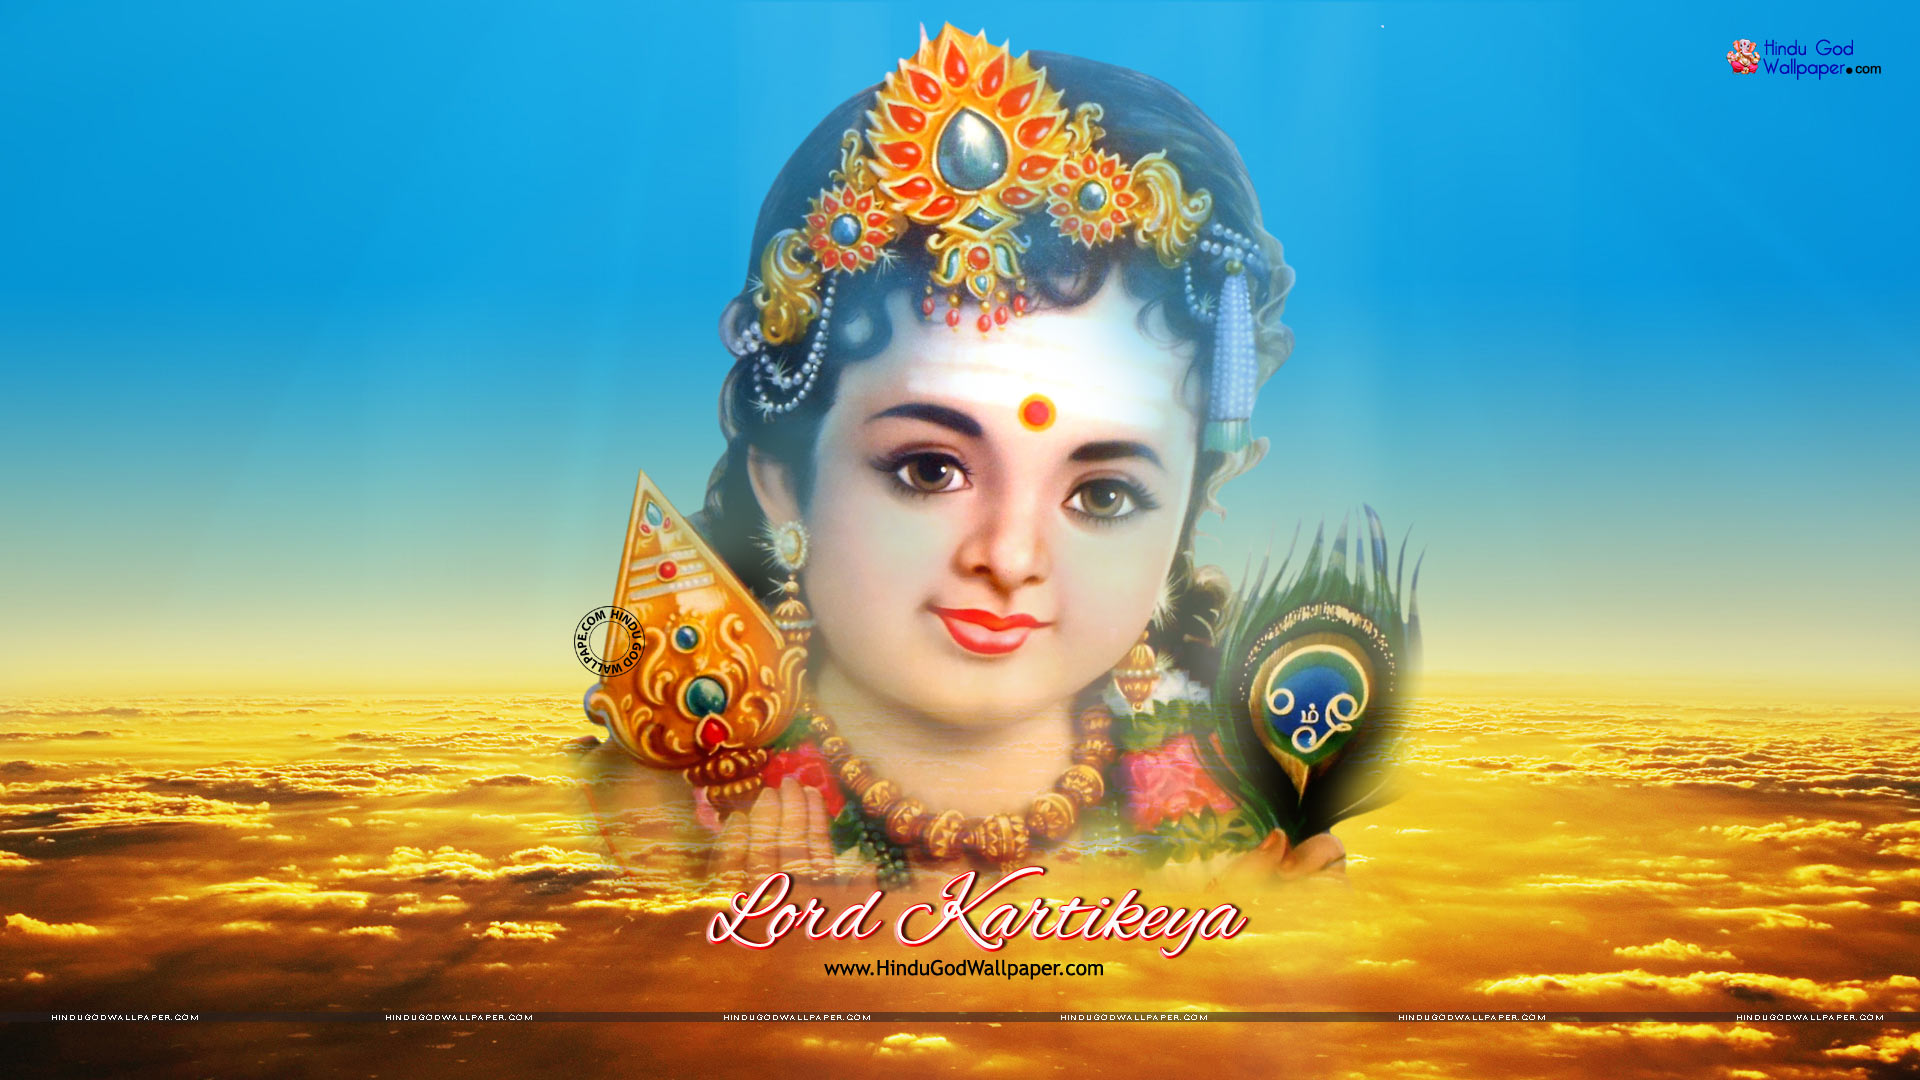 47+] Hindu God HD Wallpapers 1080p - WallpaperSafari